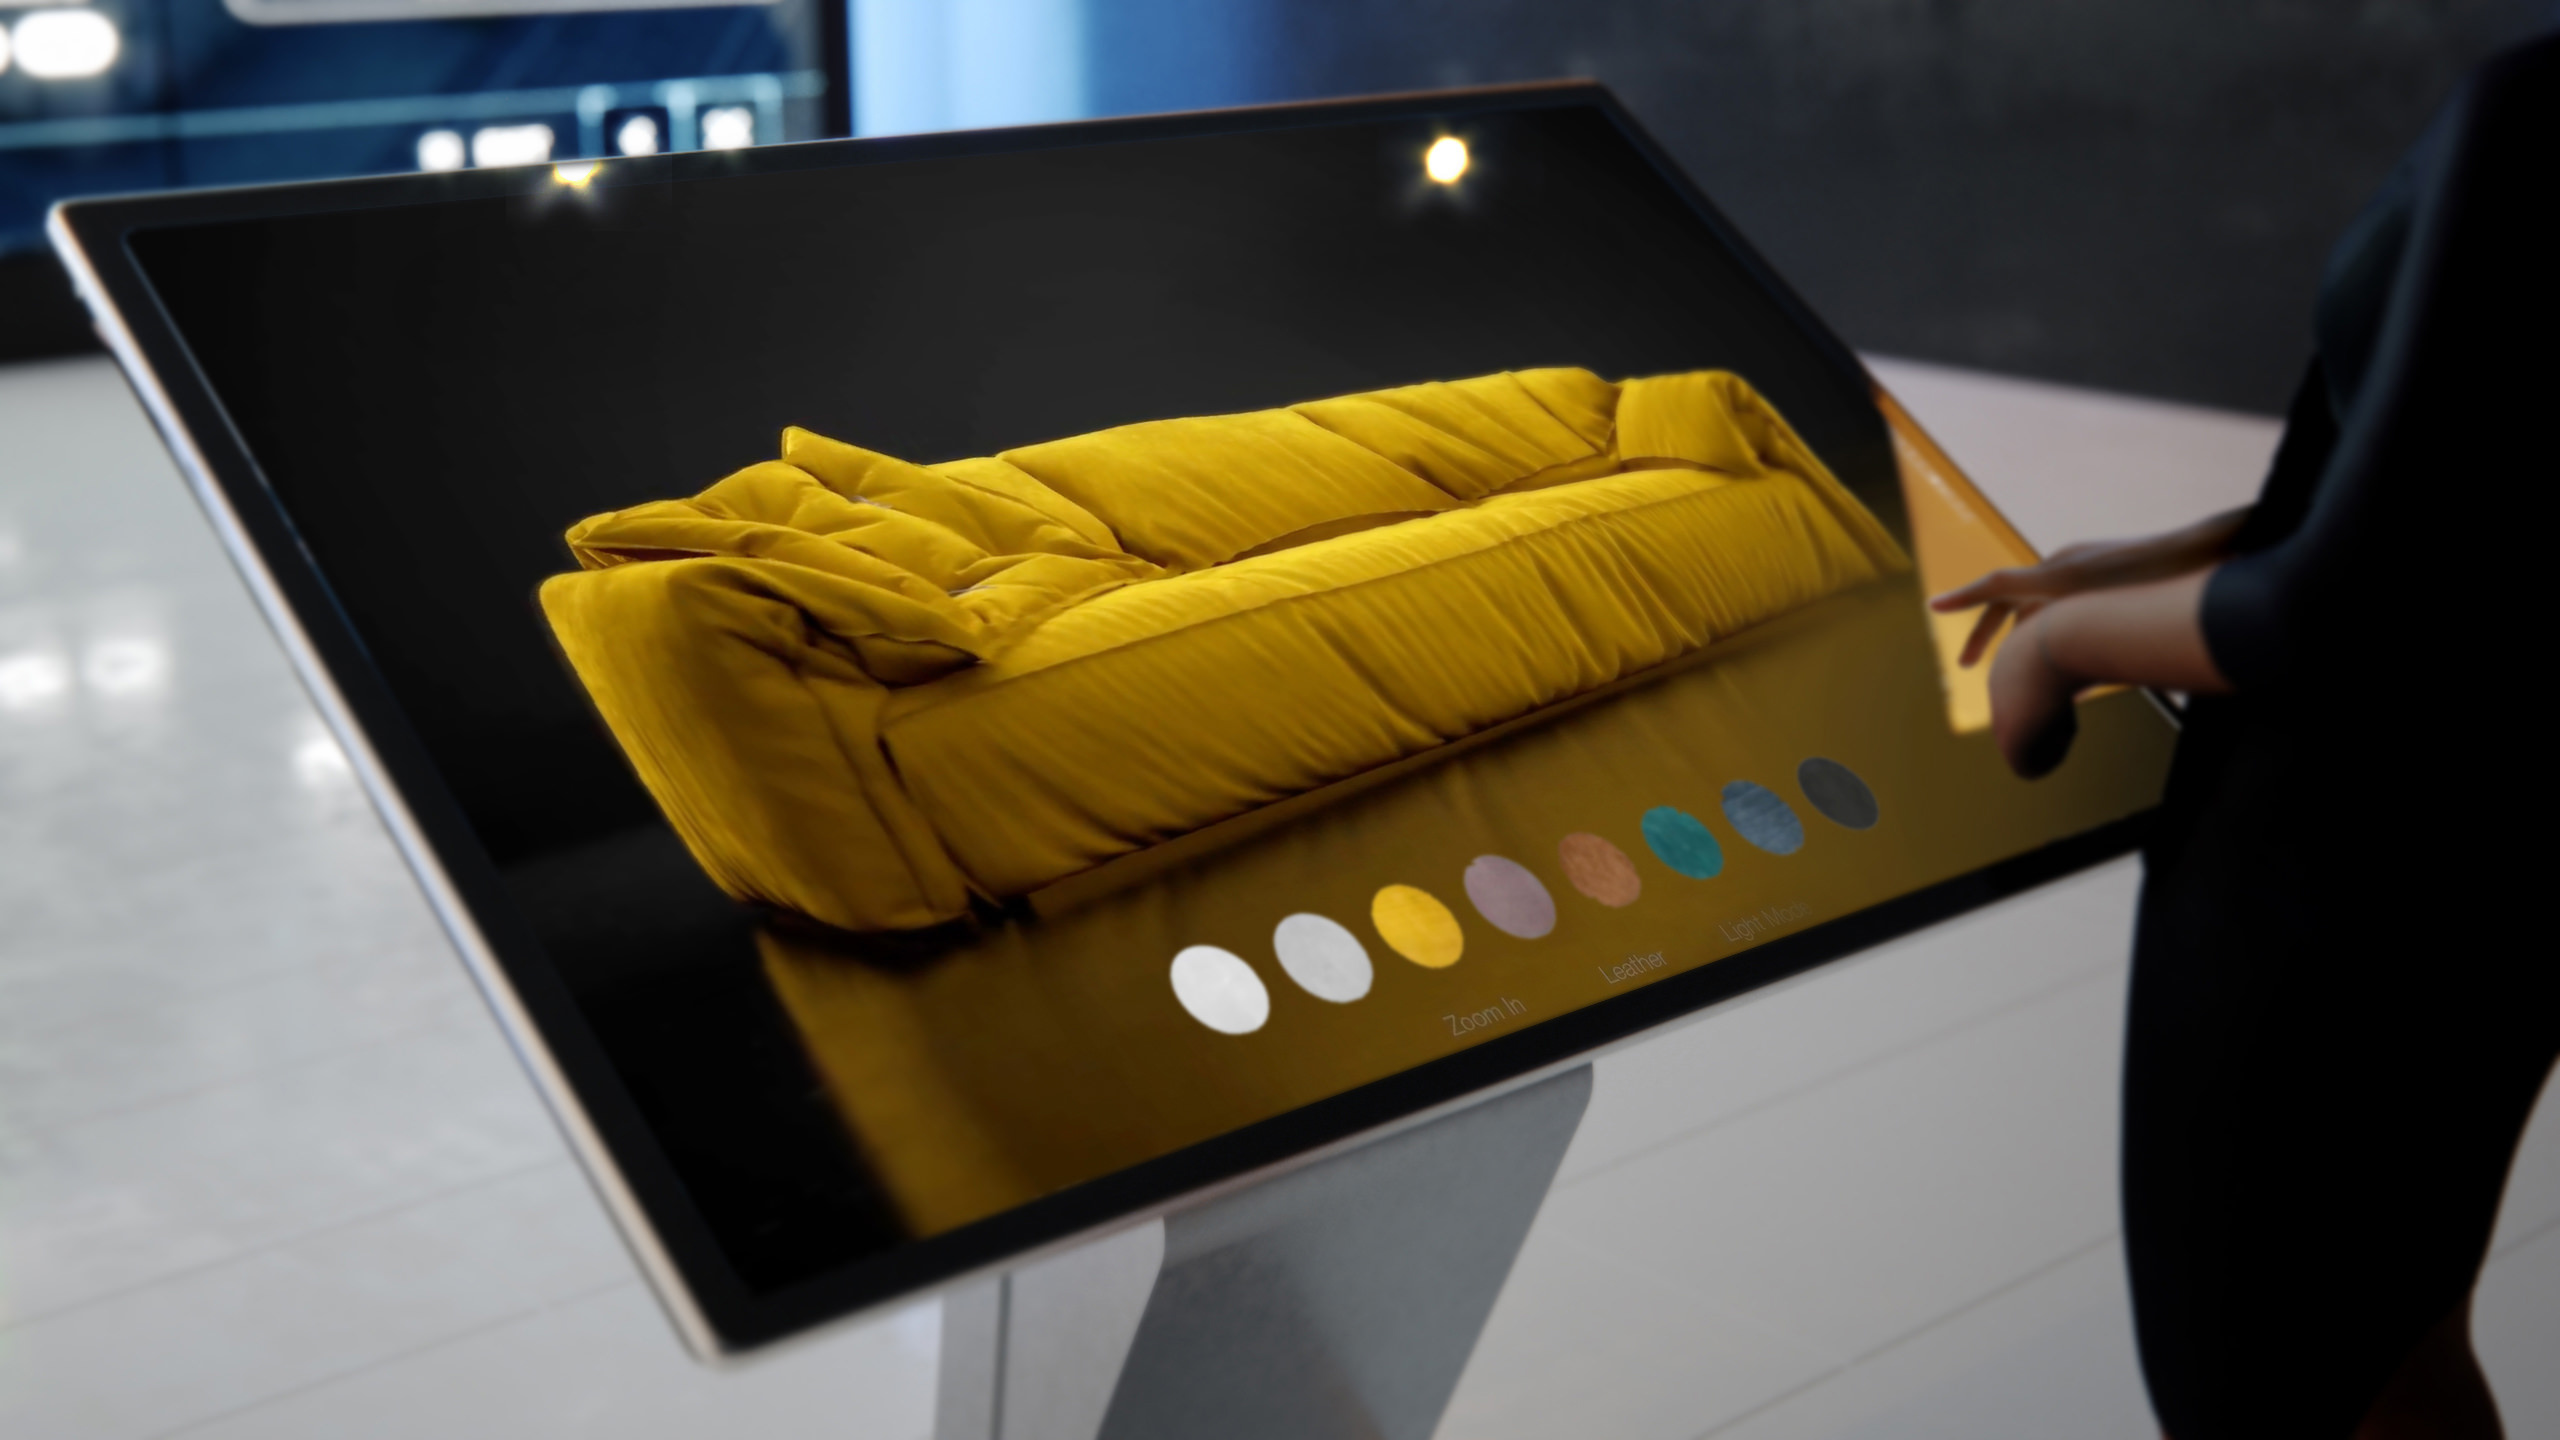 Un écran tactile interactif moderne affichant un canapé jaune à coussin unique dans l'éclairage sombre du studio et une barre d'outils qui montre les modes possibles à appliquer pour une entreprise de commerce électronique ou une boutique en ligne